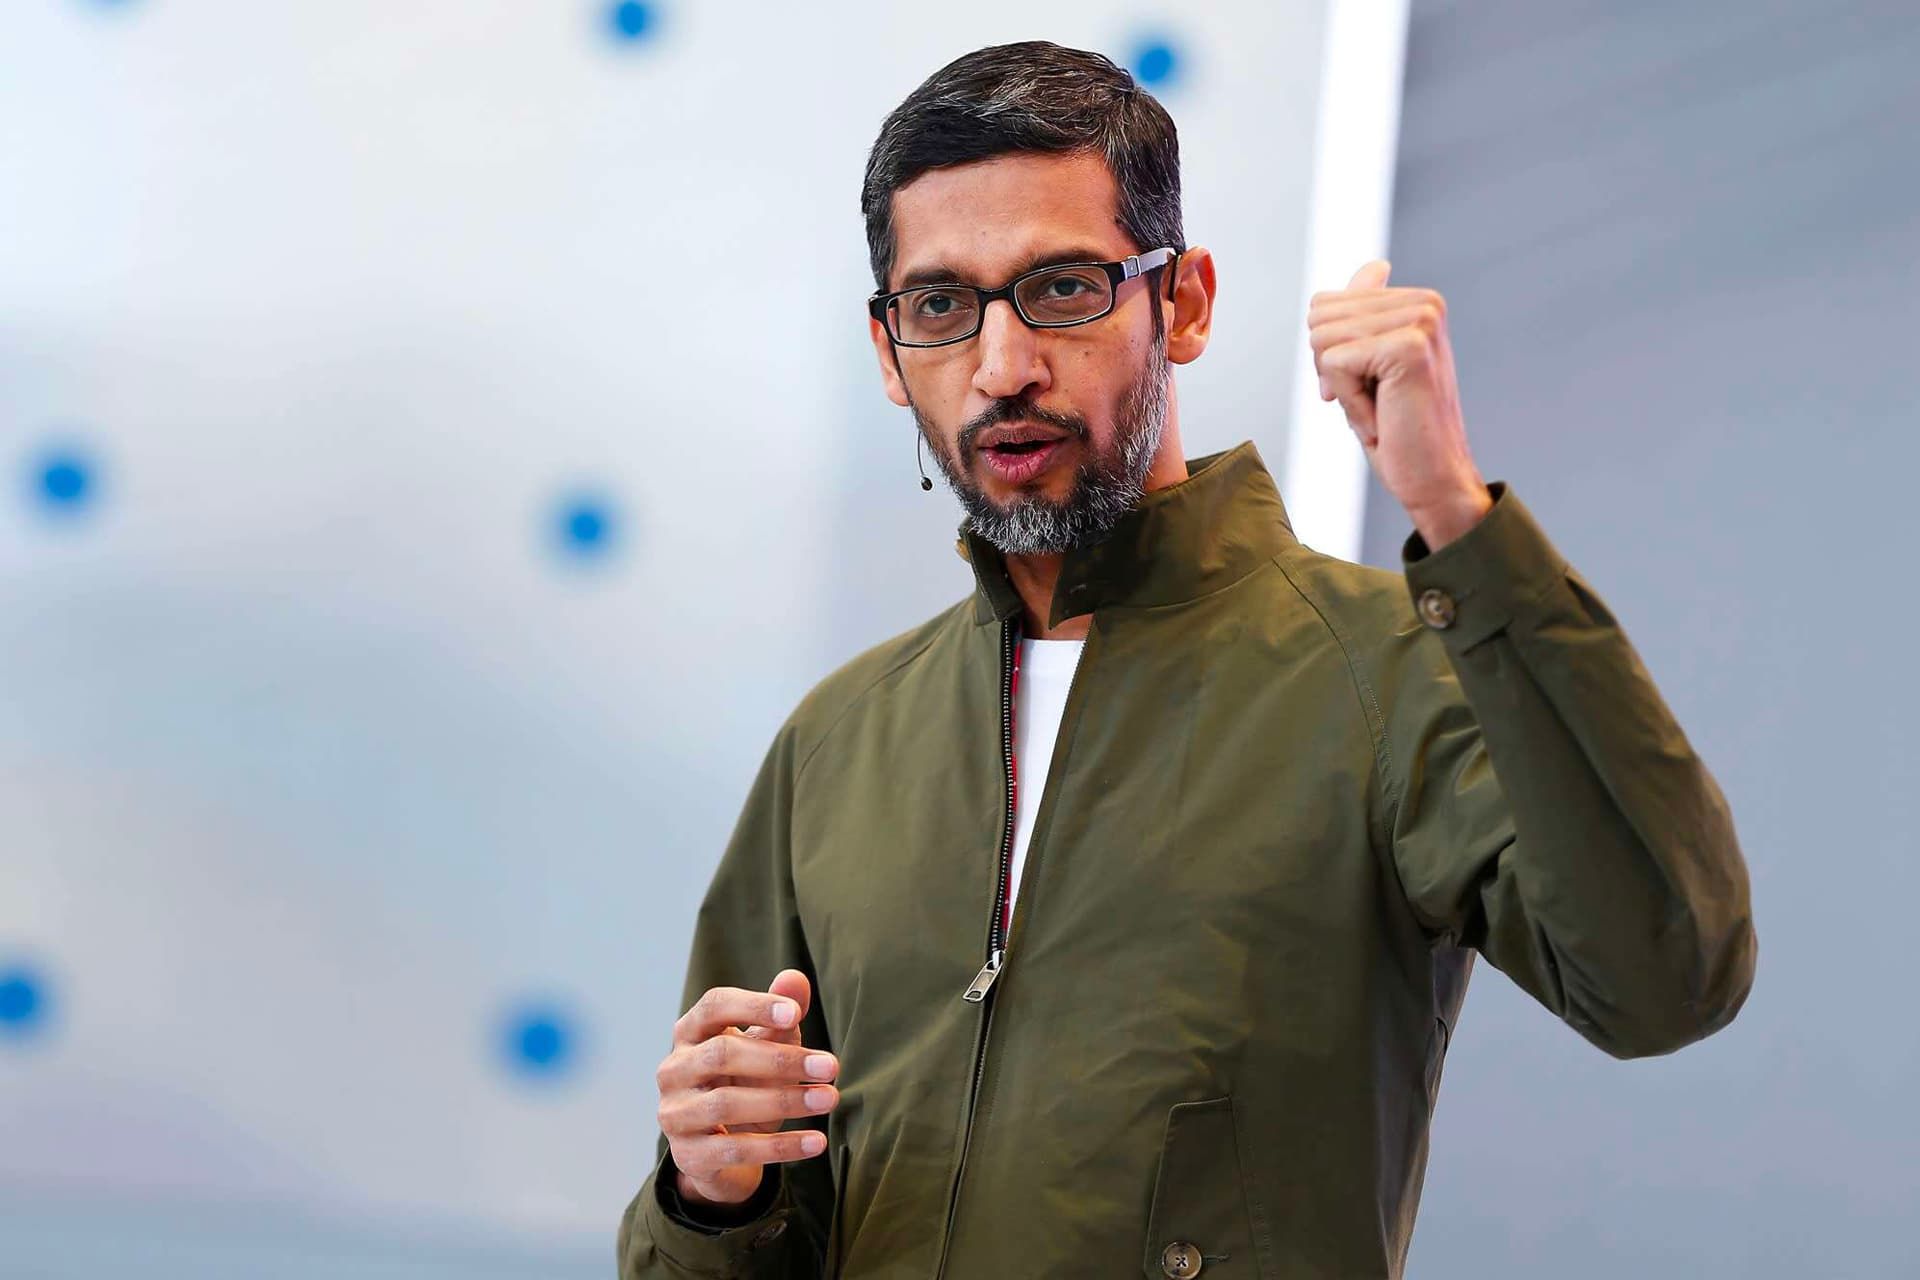 سوندار پیچای / Sundar Pichai مدیرعامل گوگل با کت سبز